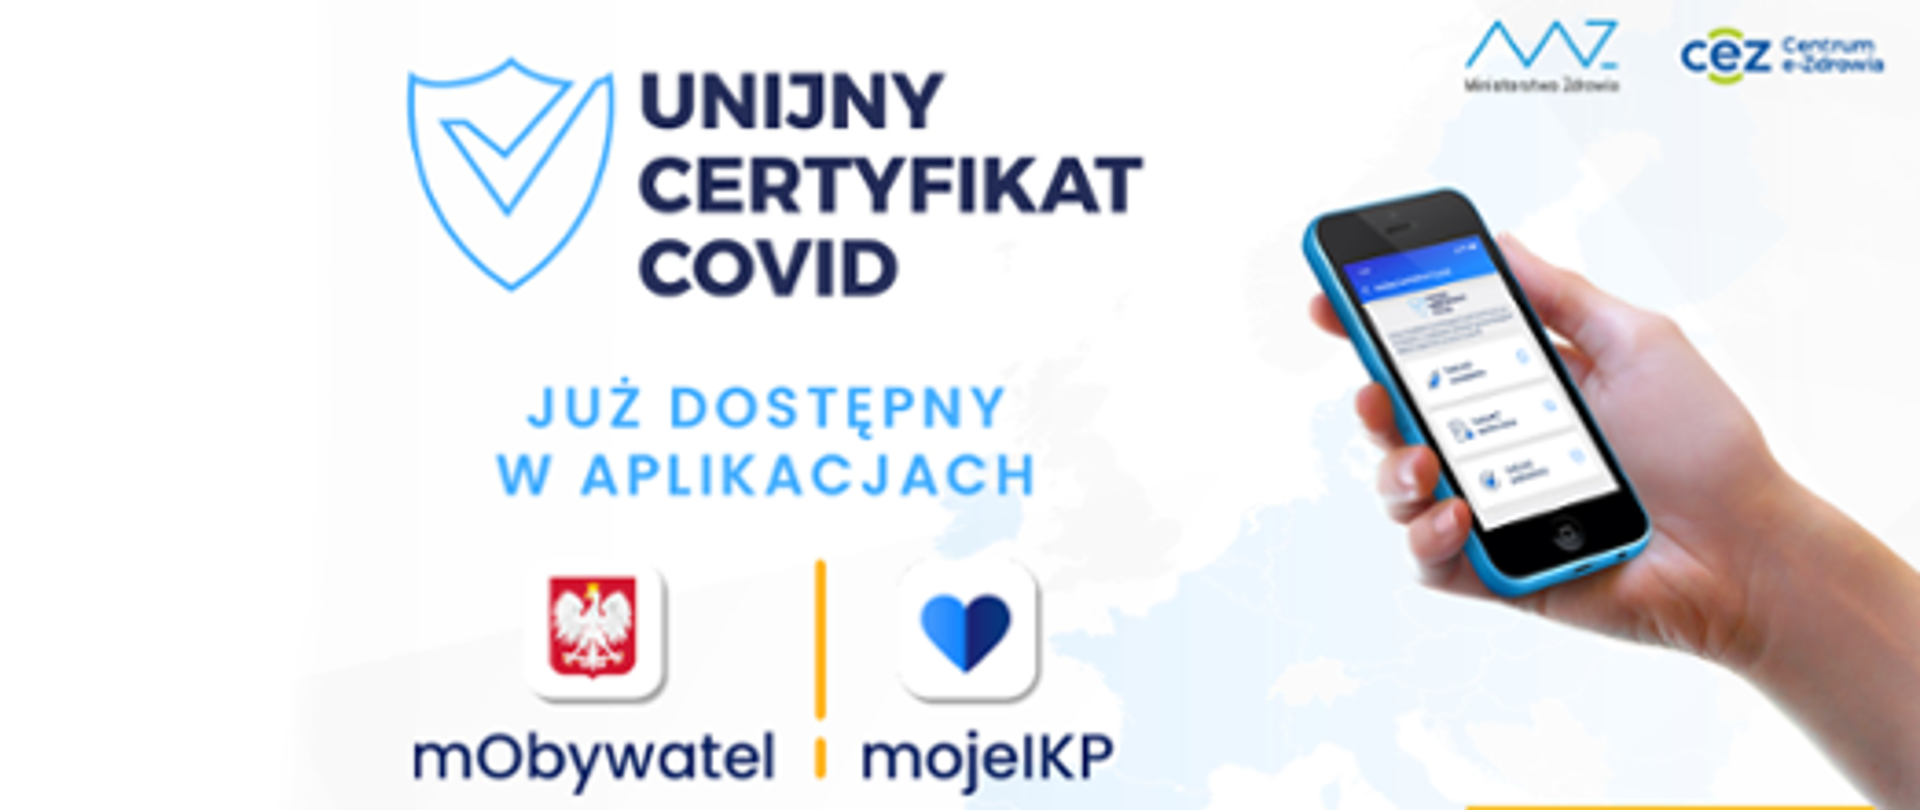 unijny certyfikat covid